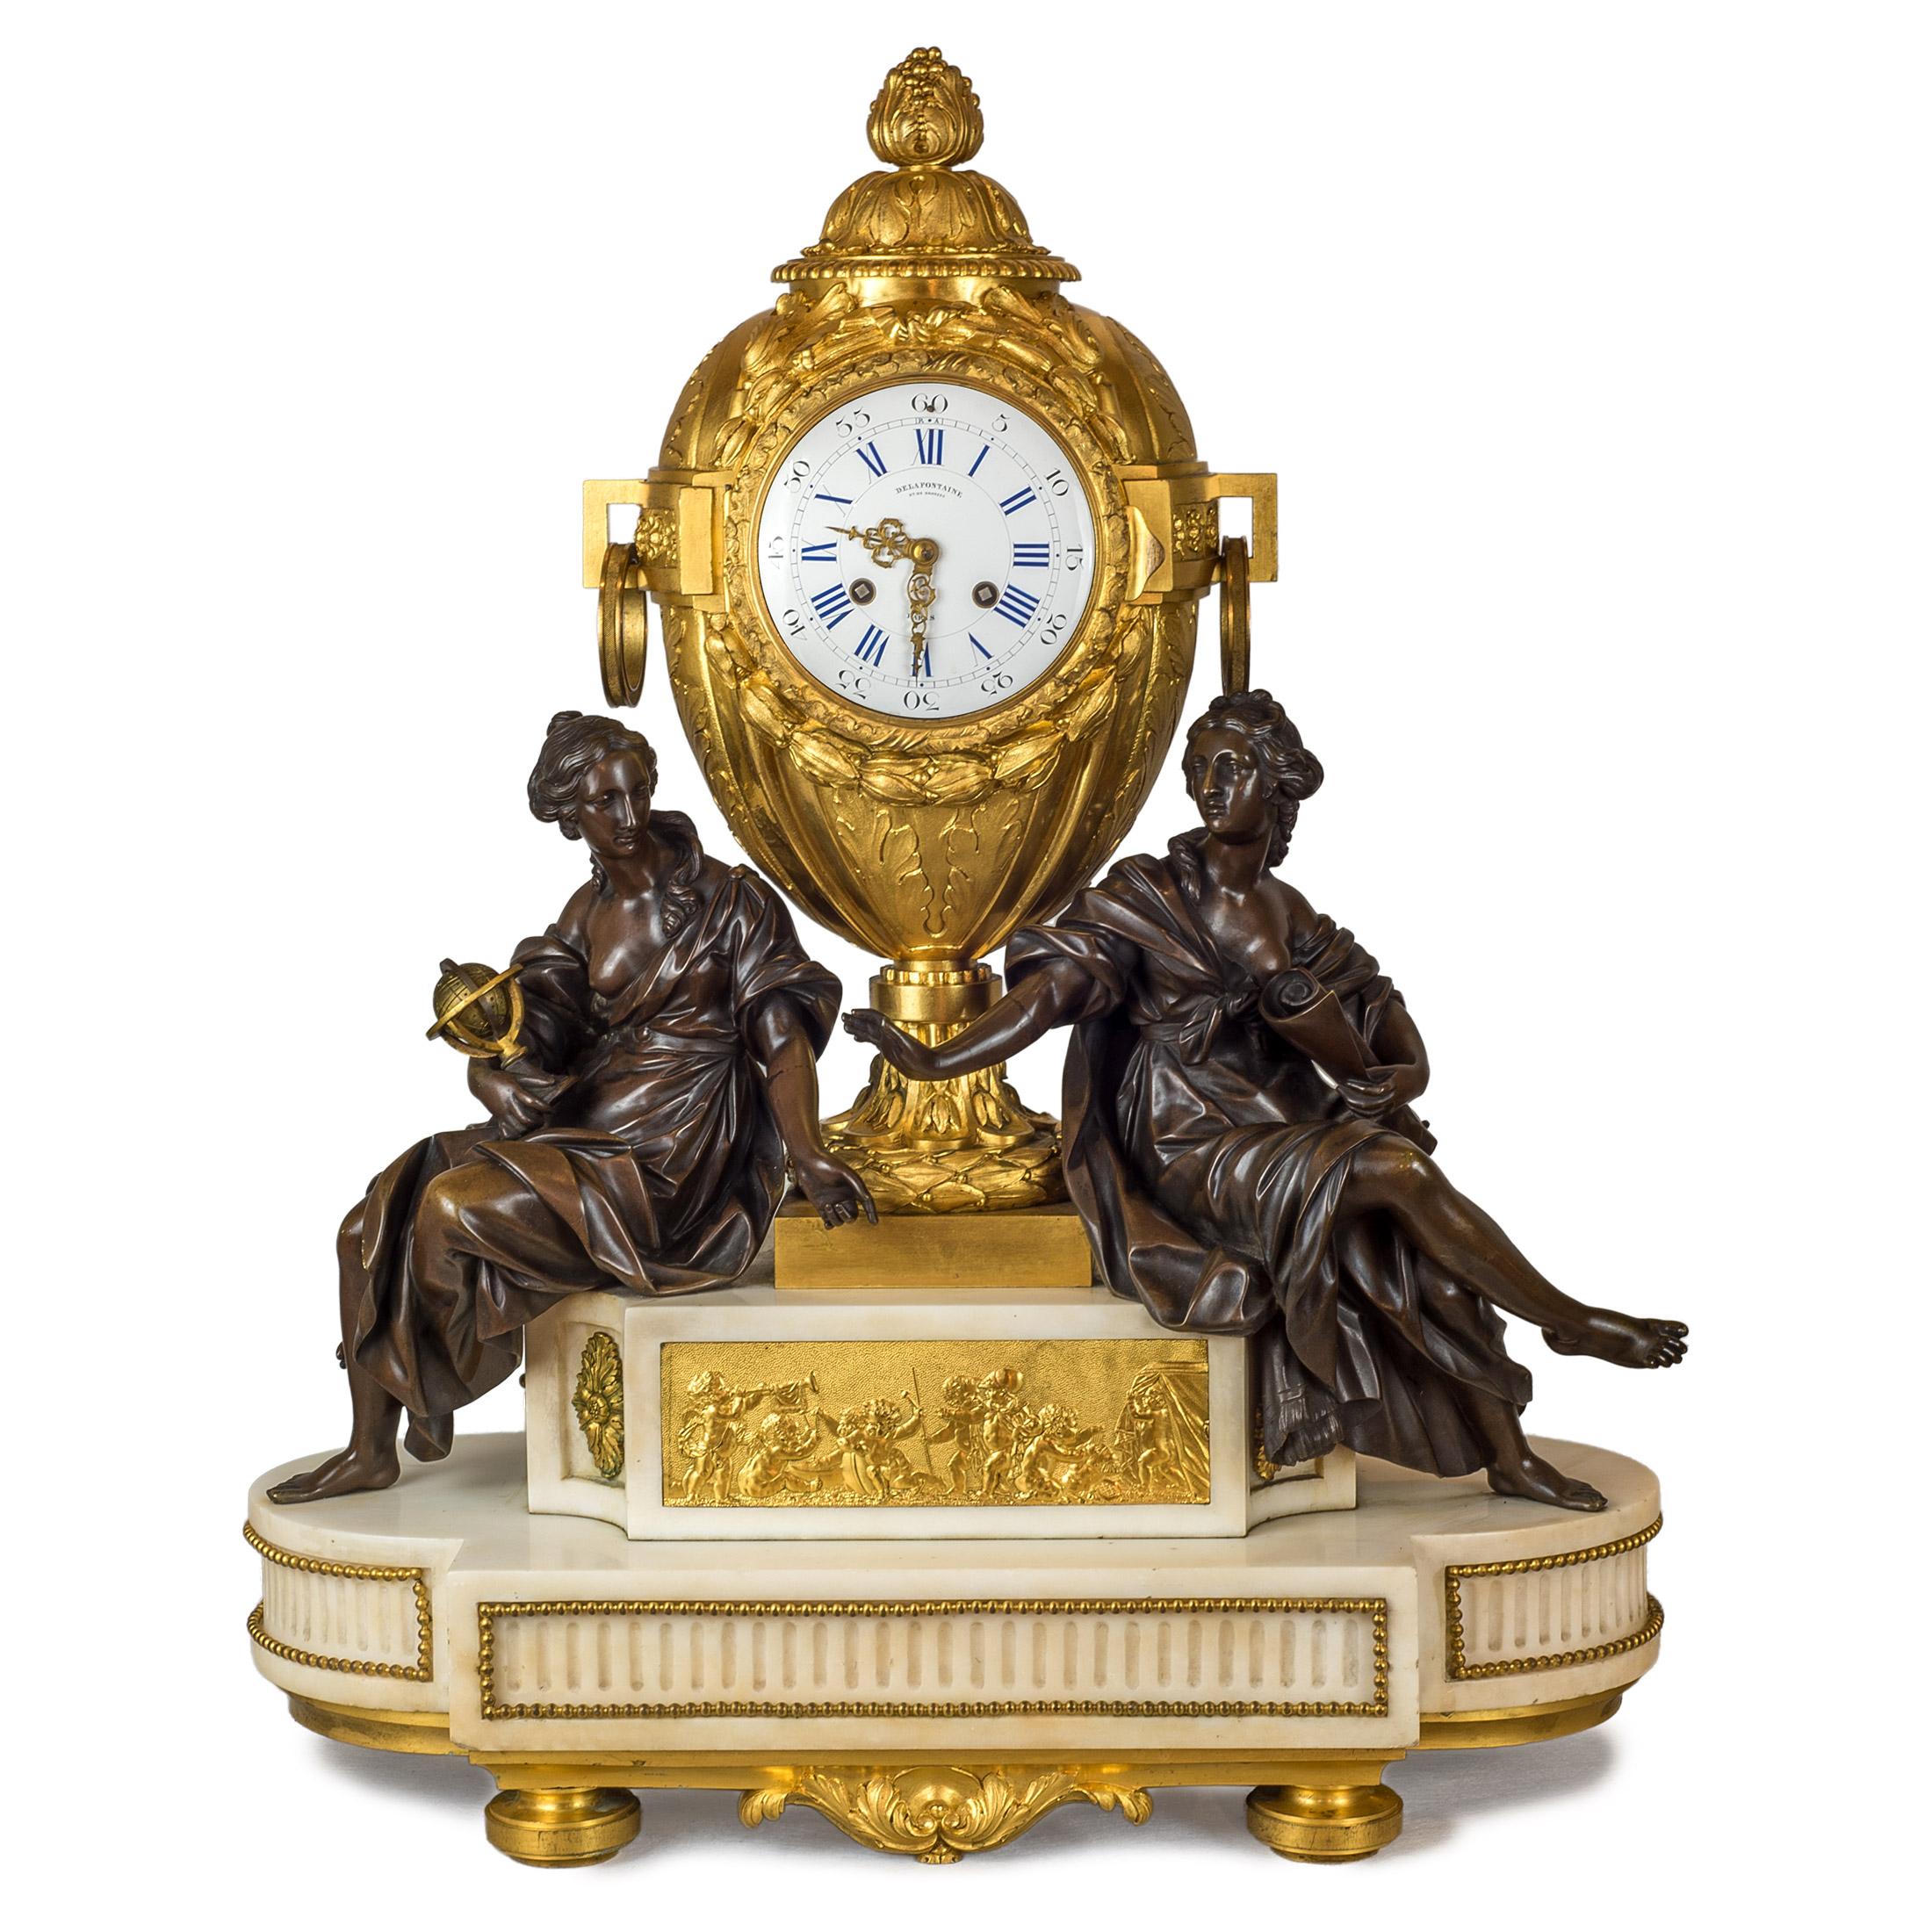 Un ensemble de pendules de qualité en bronze doré et patiné et en marbre blanc avec des chérubins tenant les candélabres et une grande pendule centrale avec deux figures féminines, l'une tenant un globe et l'autre un rouleau. Cadran de l'horloge